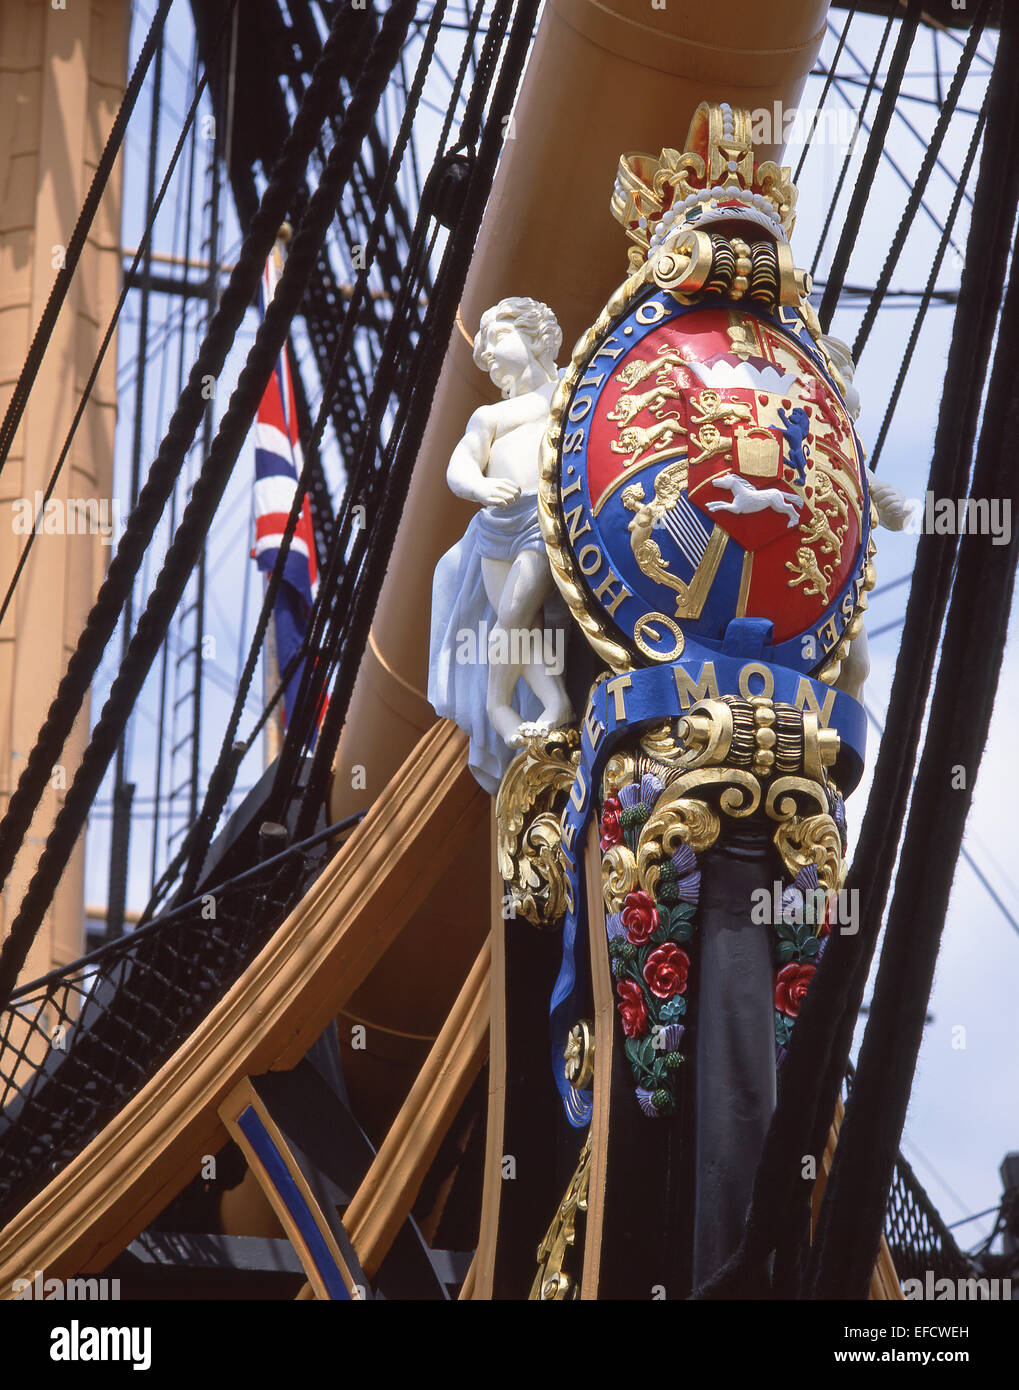 Proue de navire amiral de Nelson célèbre, le HMS Victory, Hotel, Portsmouth, Hampshire, Angleterre, Royaume-Uni Banque D'Images